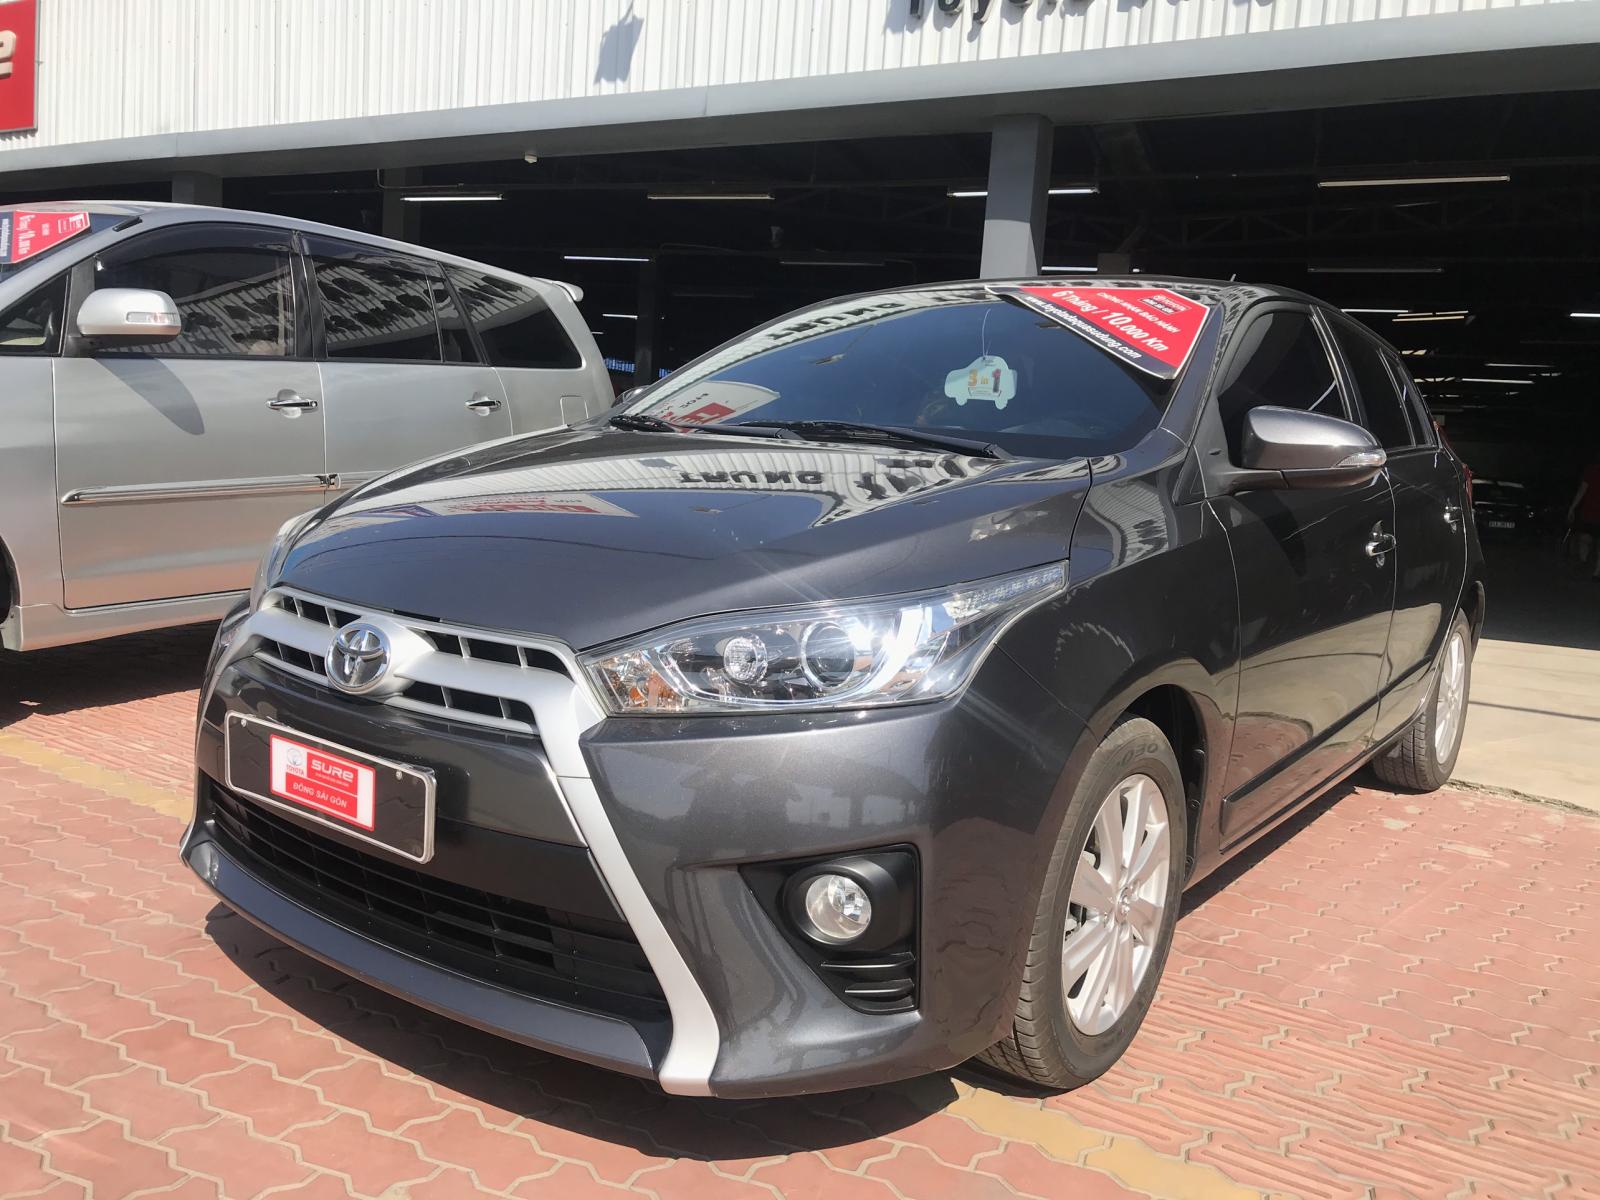 Toyota Yaris 2015 - Yaris 2015 chính hãng nhập Thái còn kèm nhiều khuyến mãi giảm giá sốc